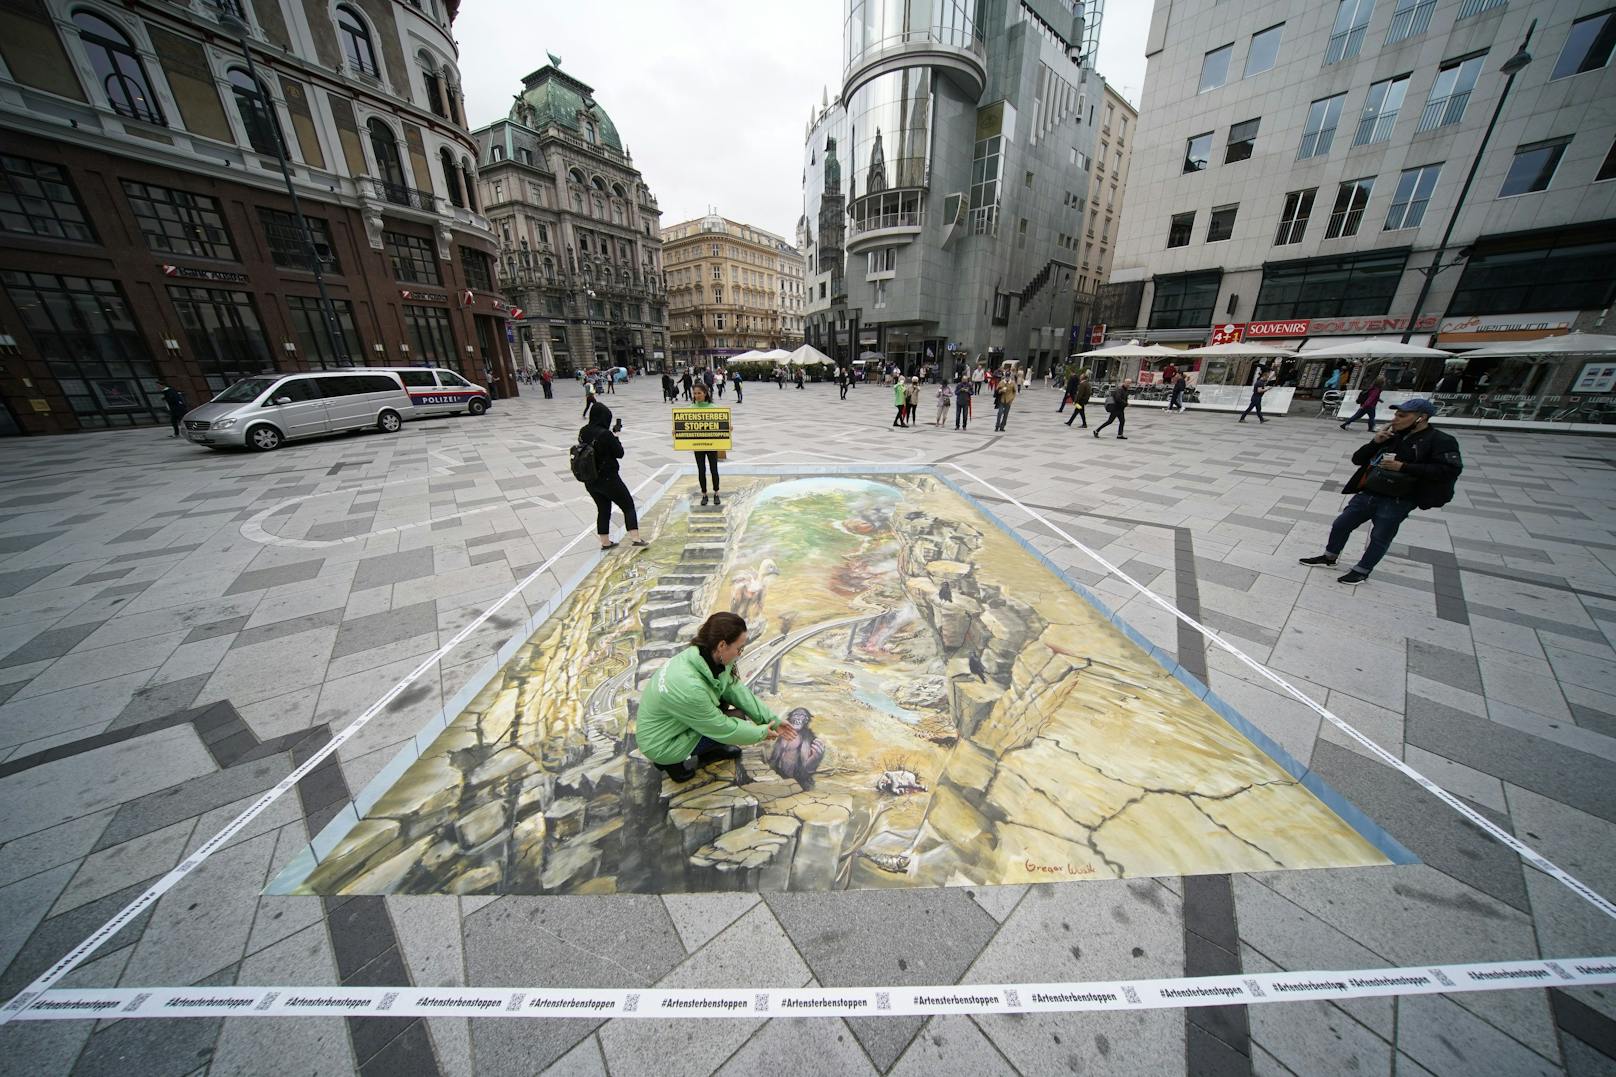 Über 40 Quadratmeter erstreckt sich das Gemälde am Stephansplatz